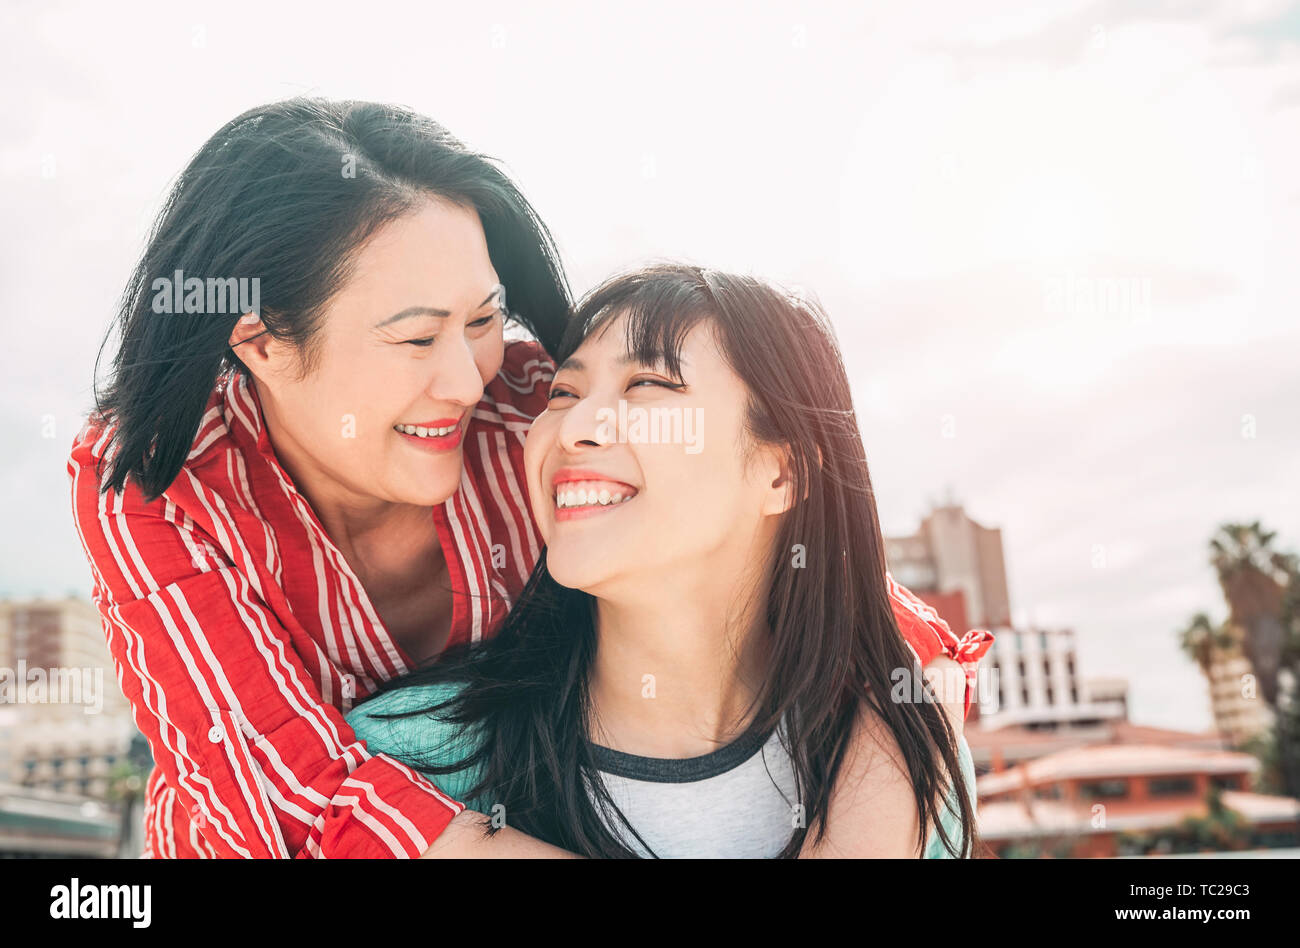 Glückliche Mutter und Tochter Spaß im Freien - asiatische Familie genießen die Zeit zusammen außerhalb - Begriff des Menschen Lifestyle, der Liebe und der Elternschaft Stockfoto